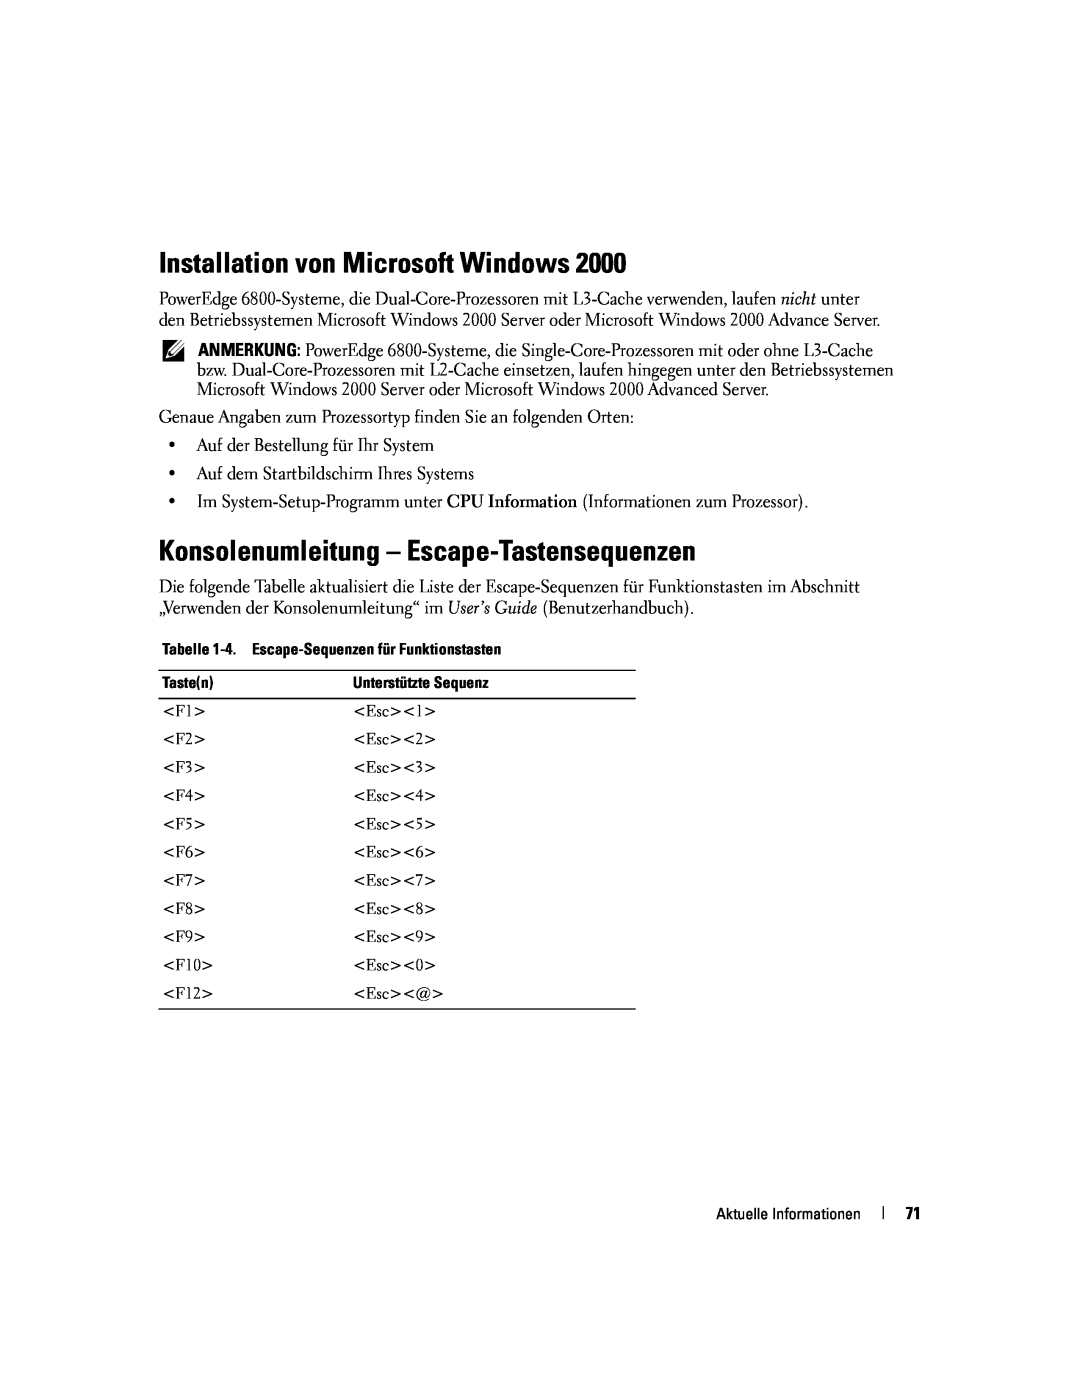 Dell 6800 manual Installation von Microsoft Windows, Konsolenumleitung - Escape-Tastensequenzen 